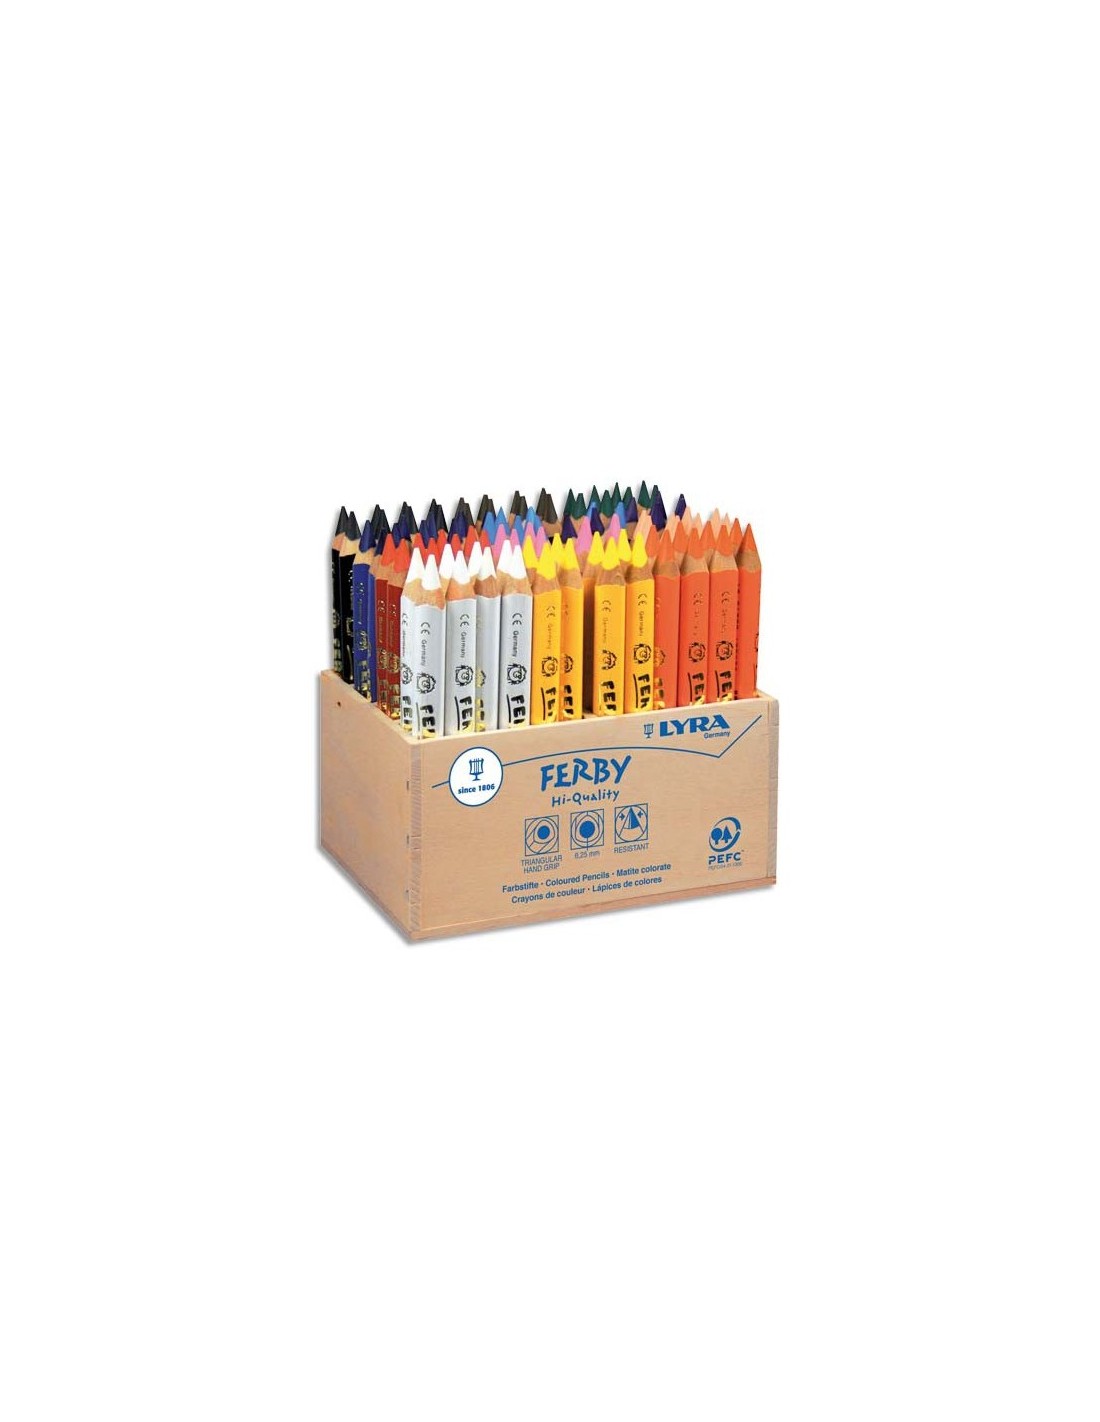 Crayon couleur lyra ferby triangulaire 120mm extrémité fermée usage économe  mine 6.25mm diamètre coffret scolaire